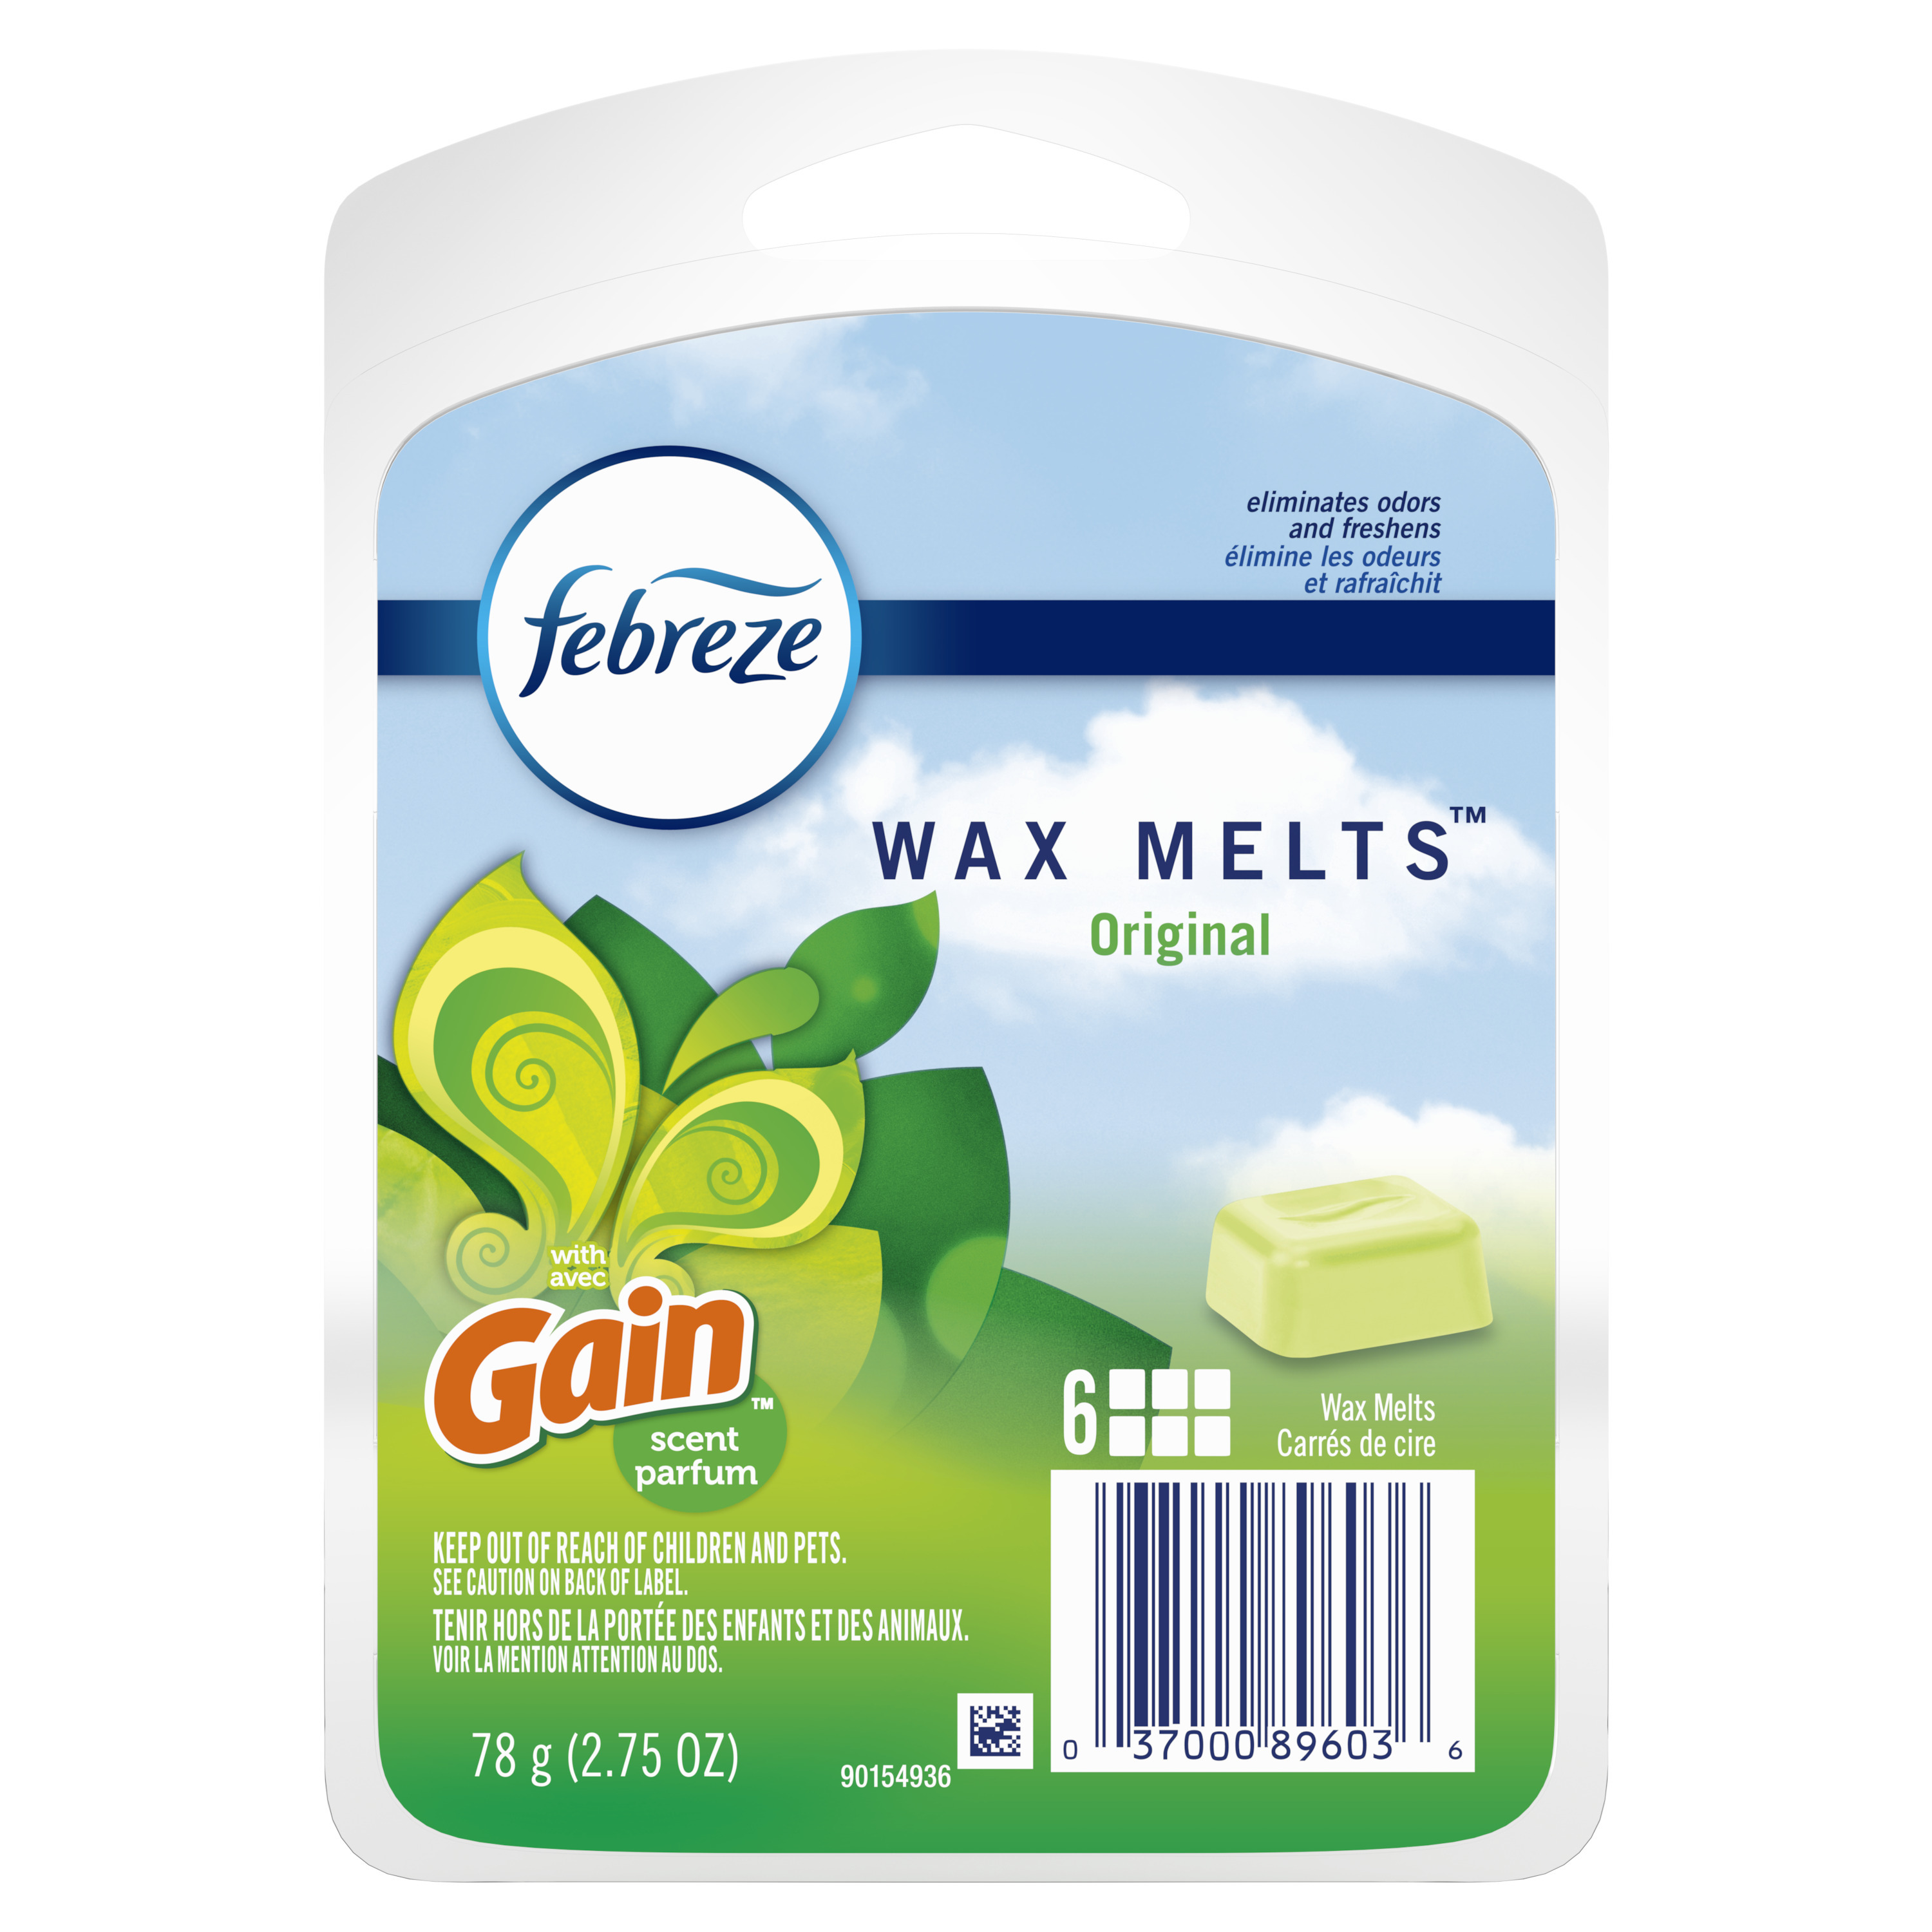 Febreze with Gain Original Wax Melts - 6 count